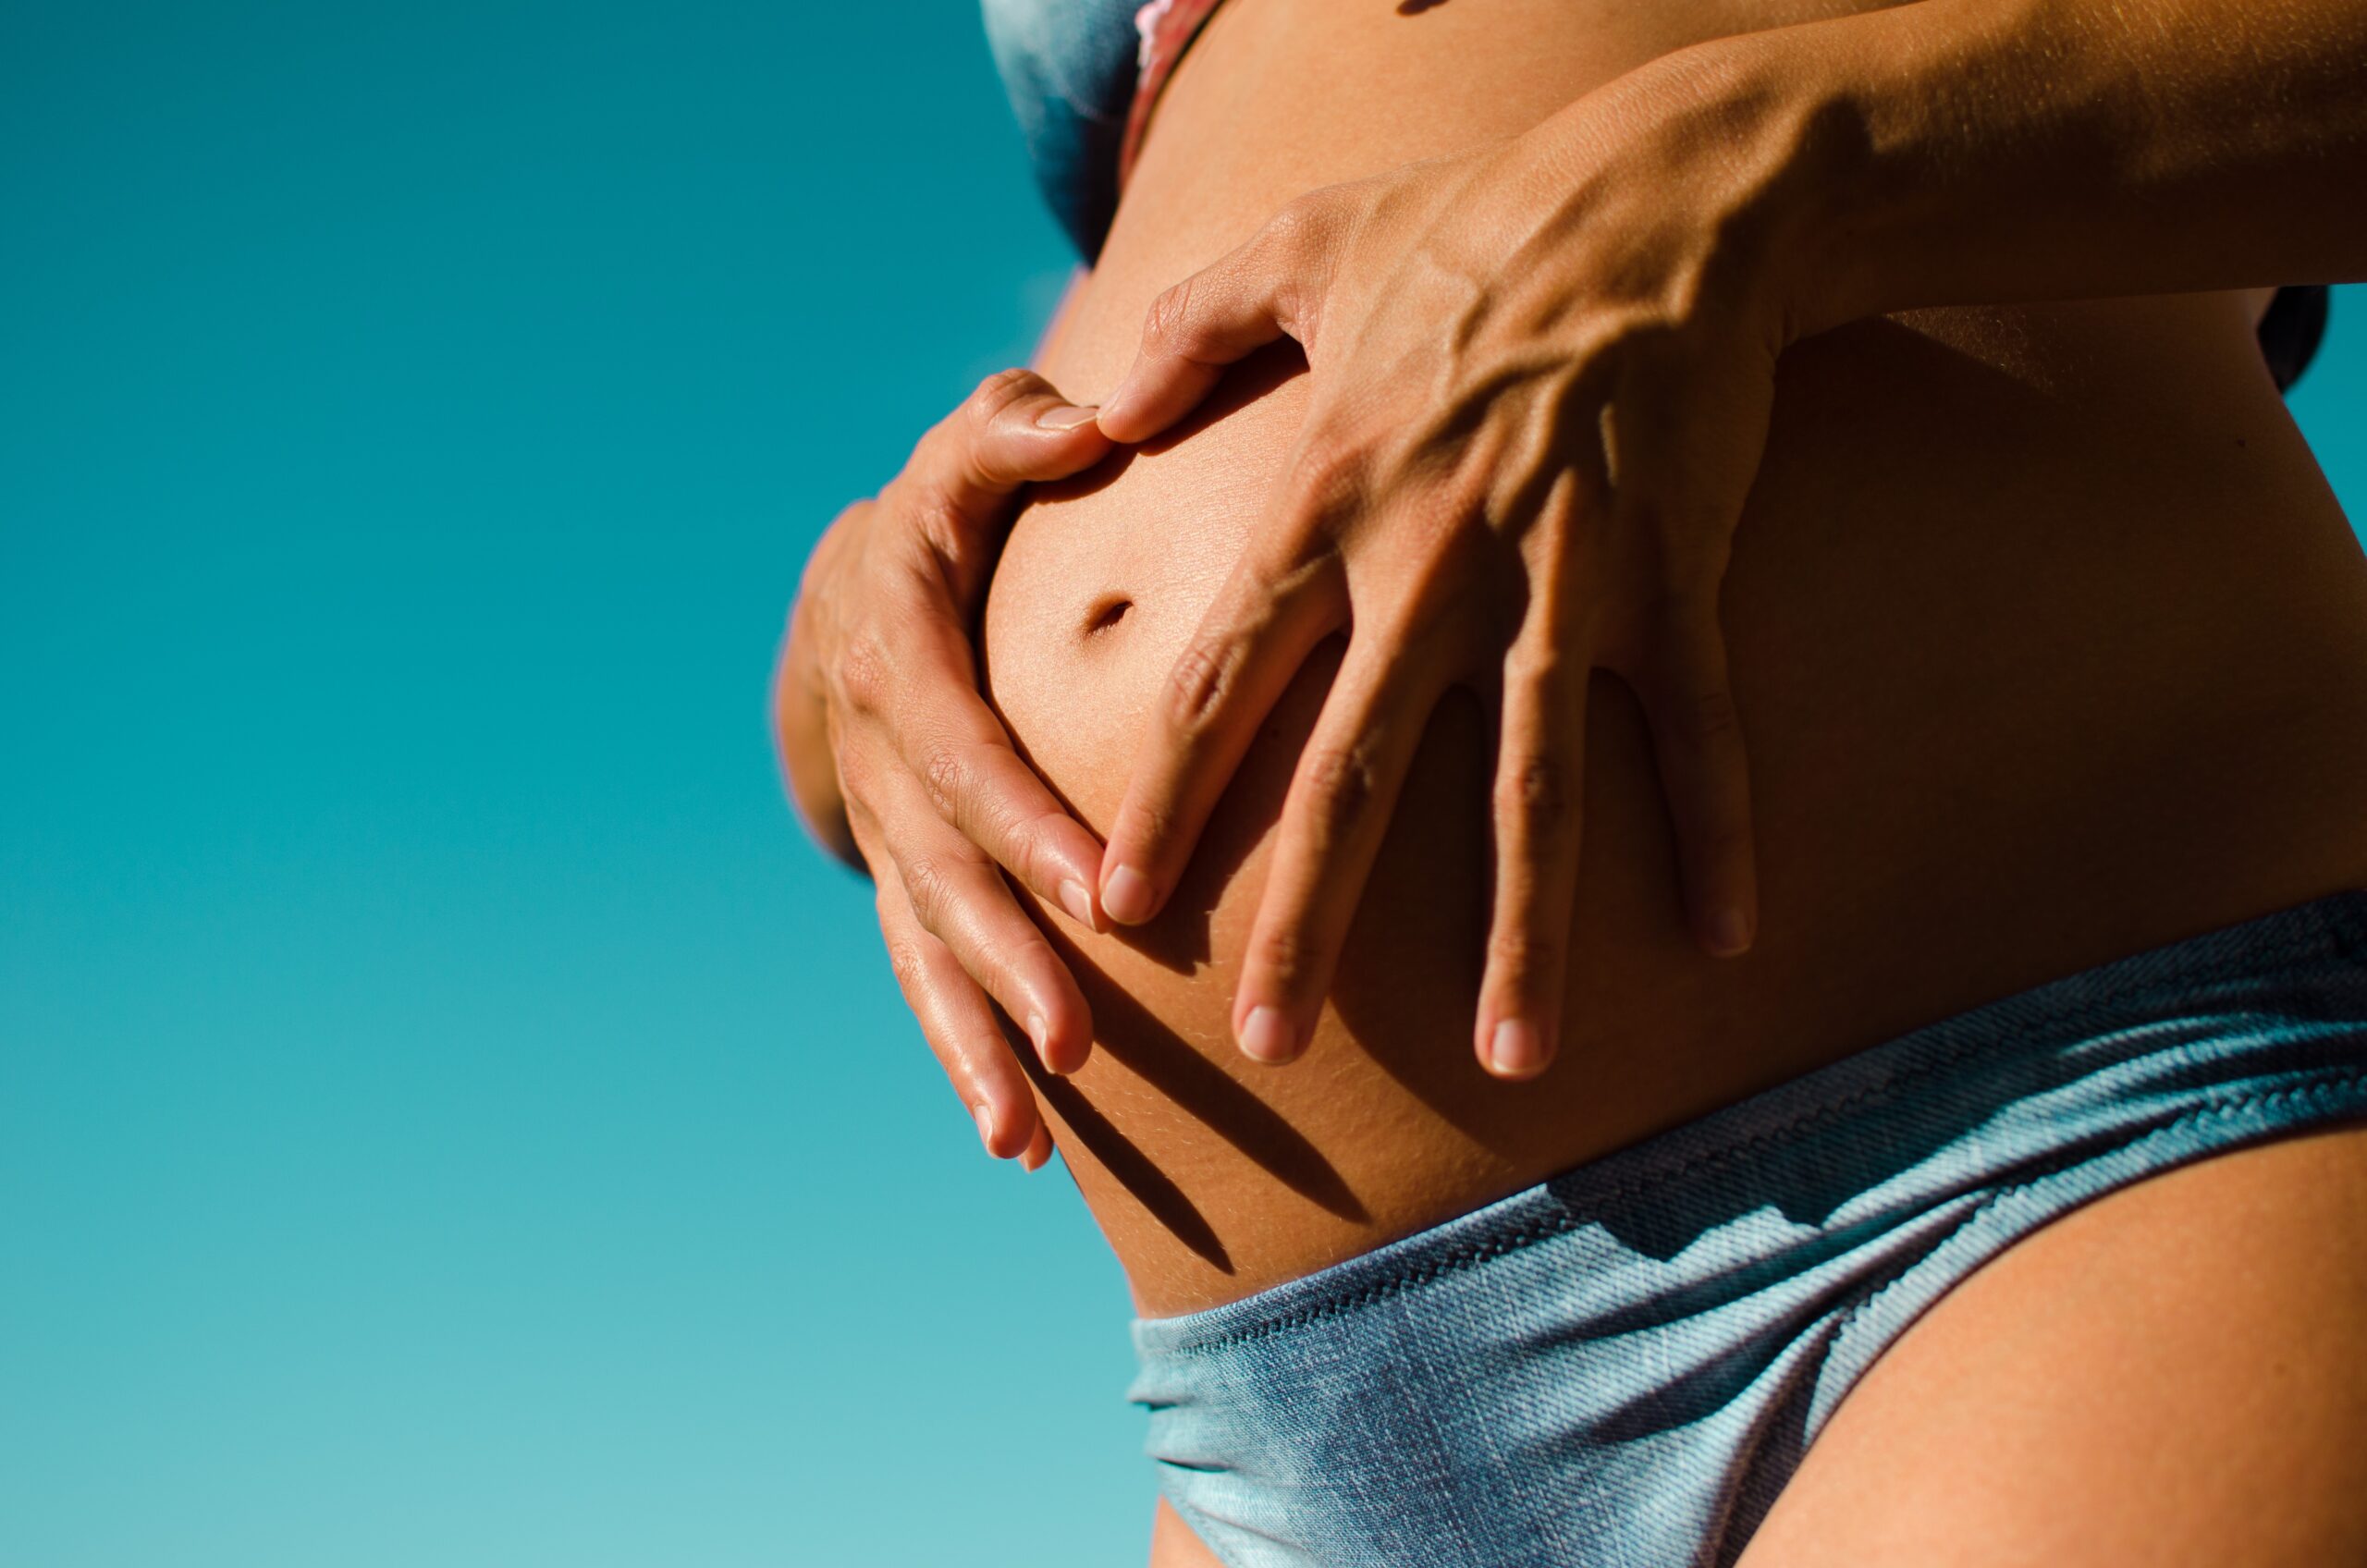 Svårt att bli gravid? Stärk din fertilitet genom livsstilsförändringar